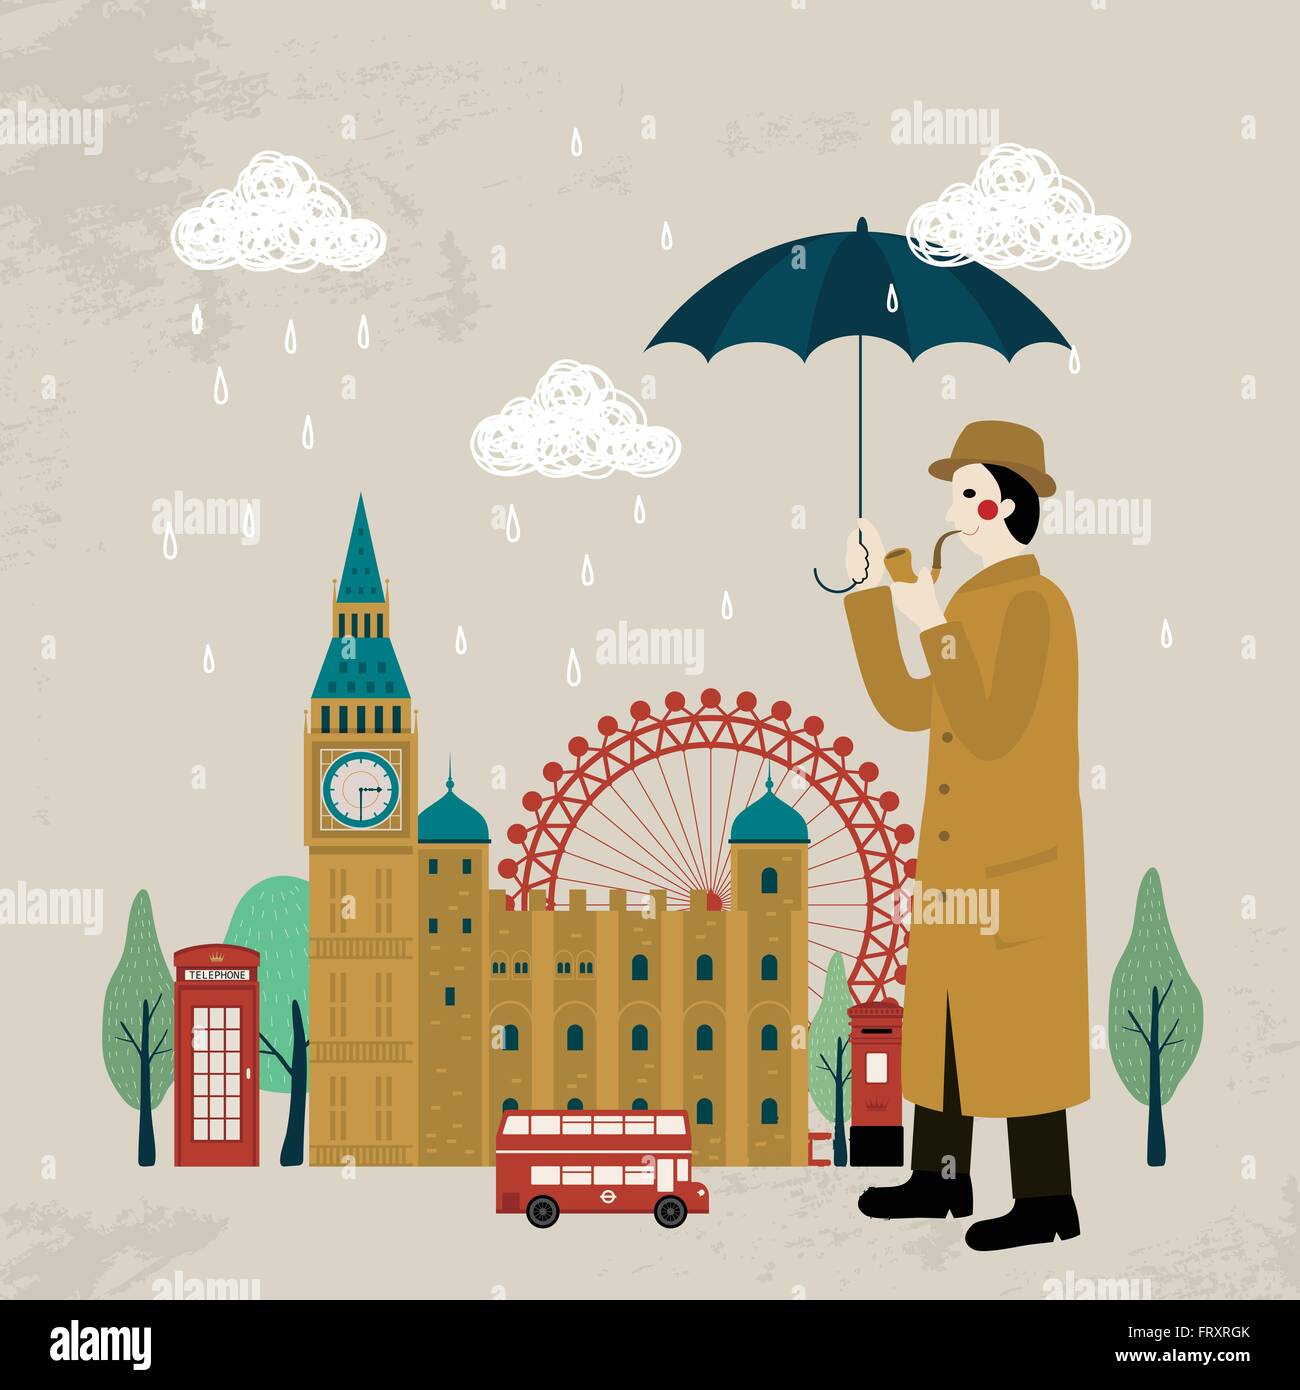 Incantevole Regno Unito impressione design - detective e attrazioni Illustrazione Vettoriale